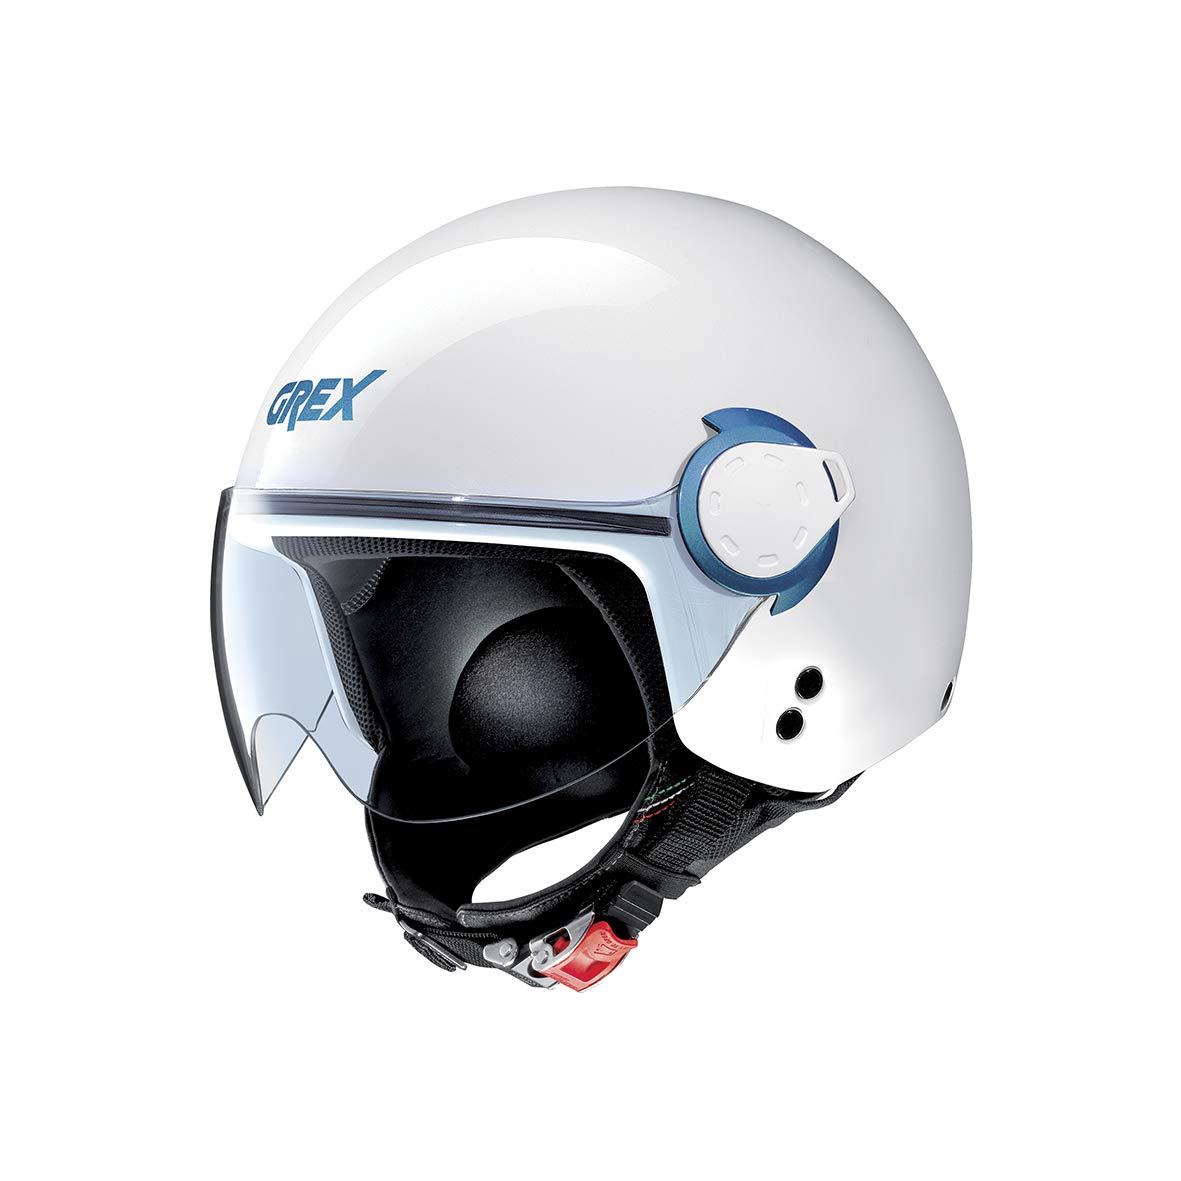 Grex Helm G3.1 und Couple Metal White S von Grex